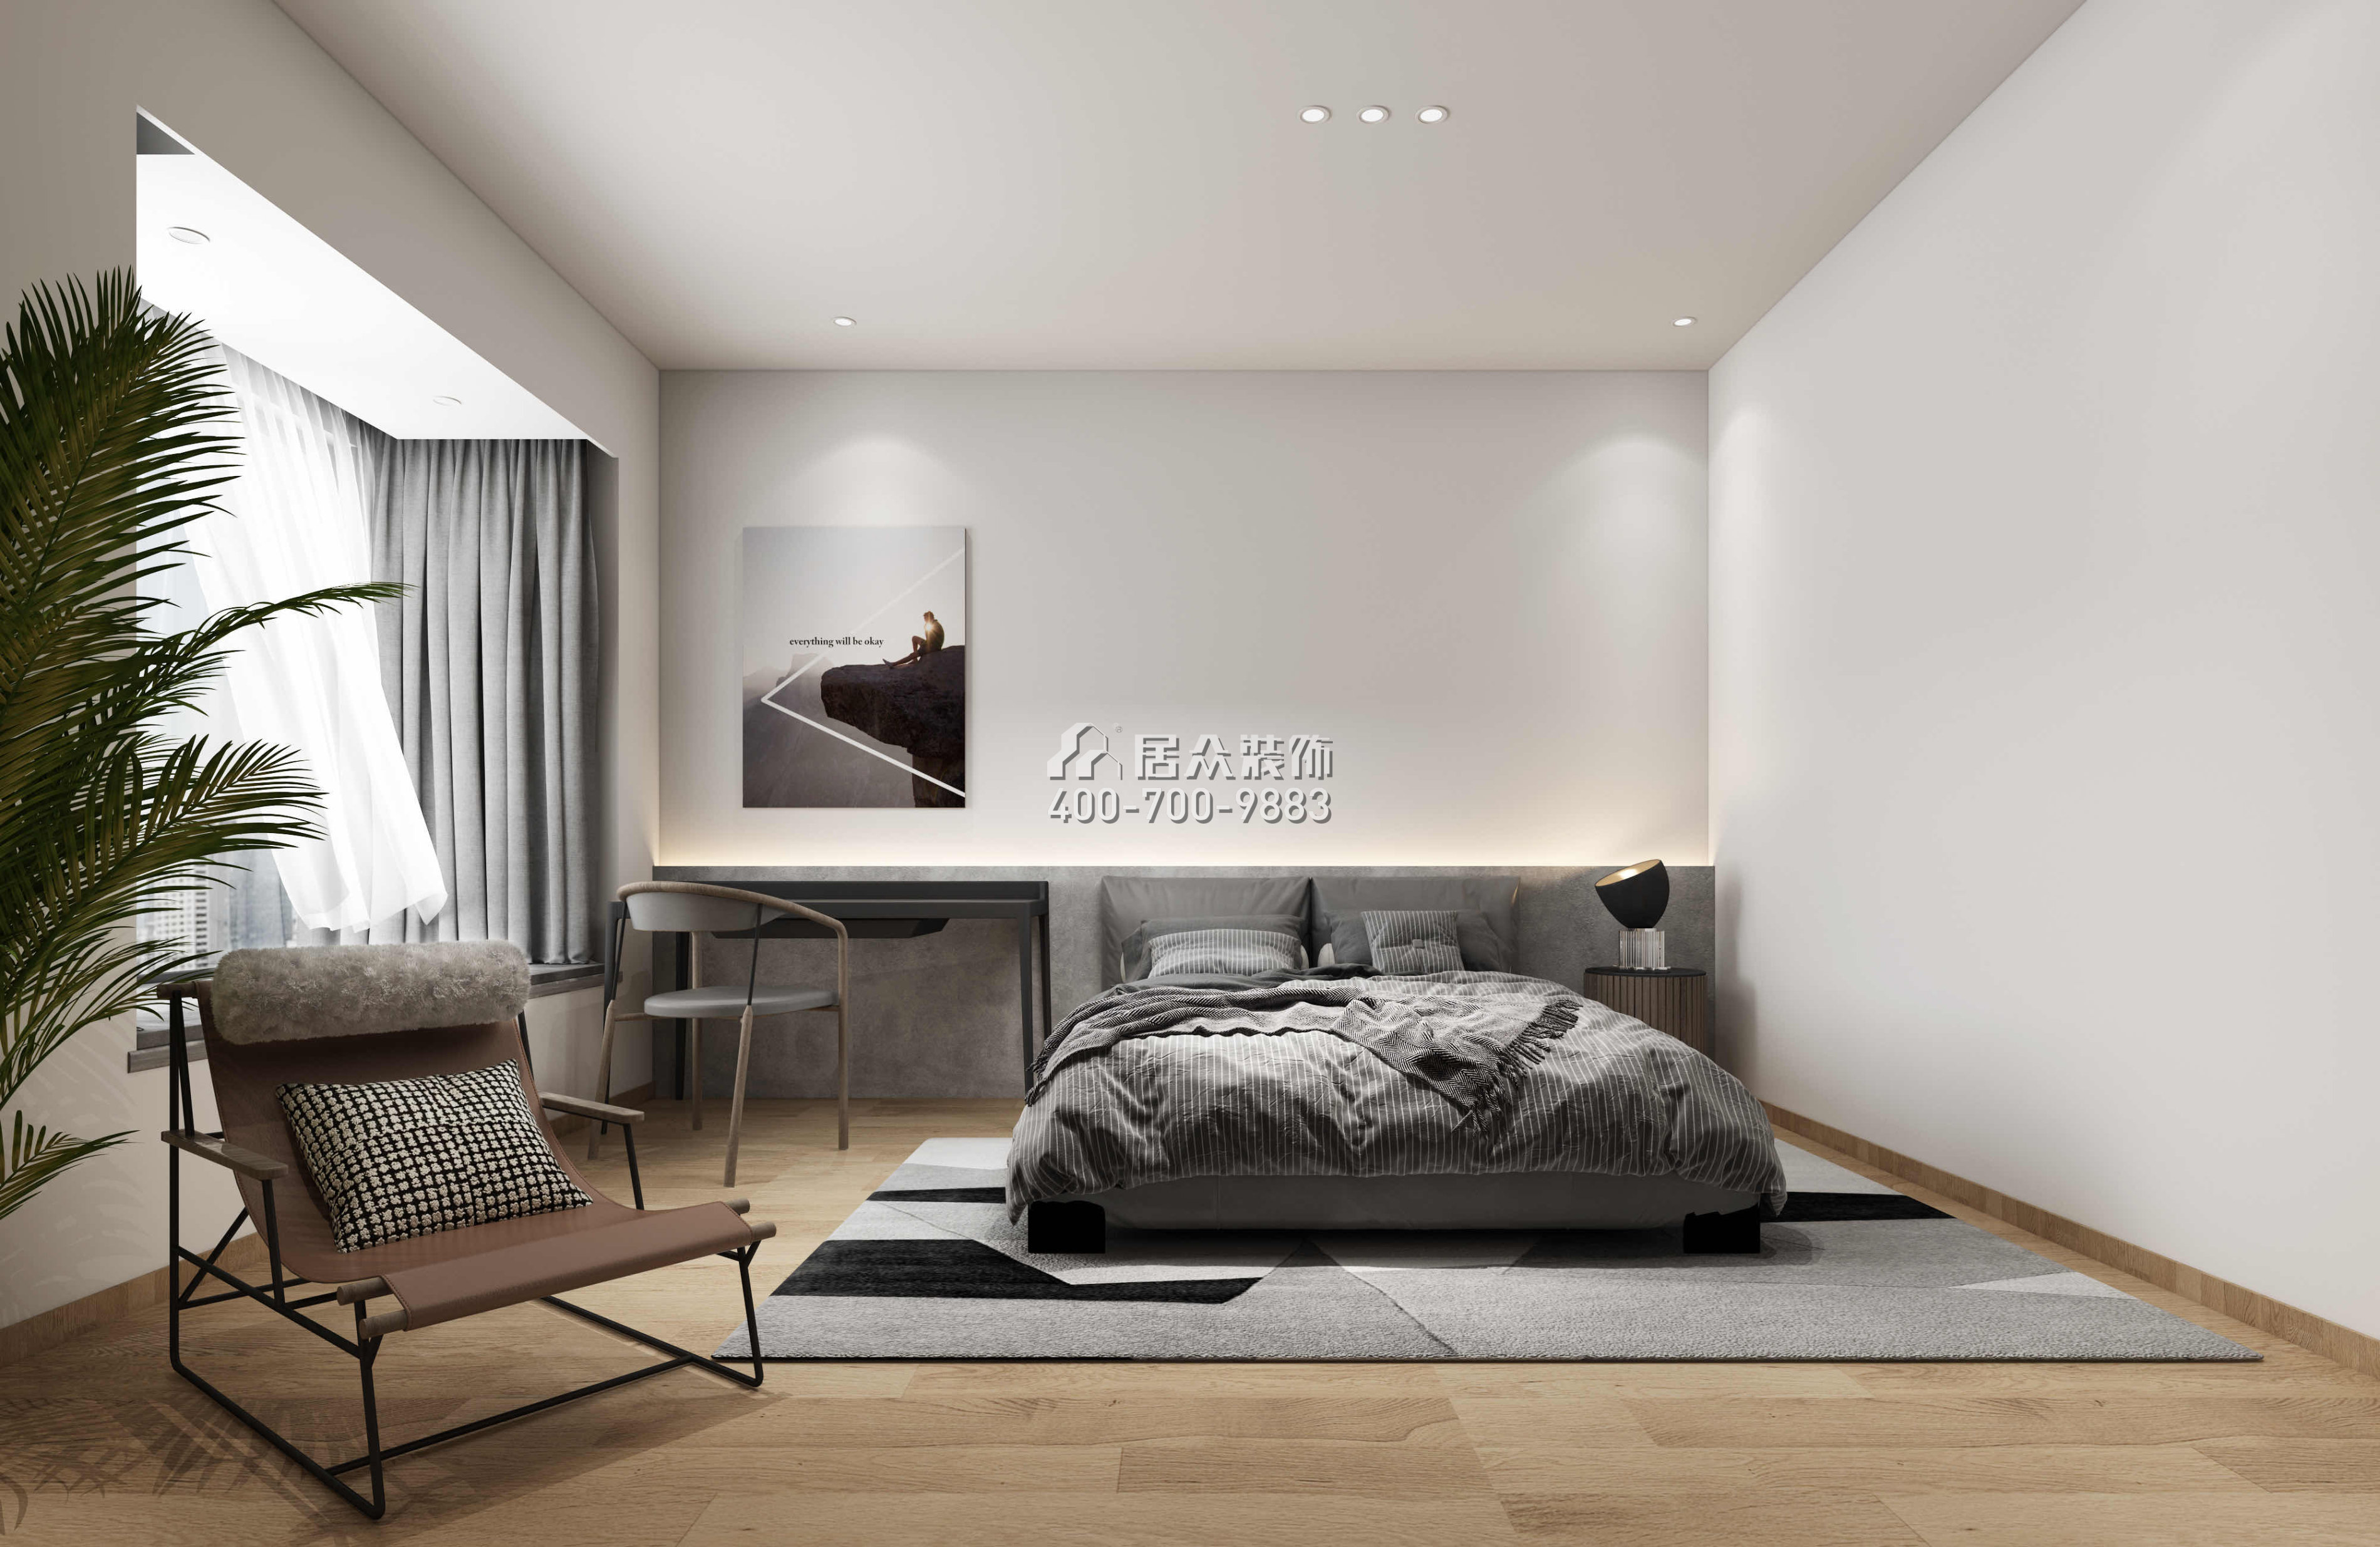 天鵝堡二期245平方米現代簡約風格平層戶型臥室裝修效果圖